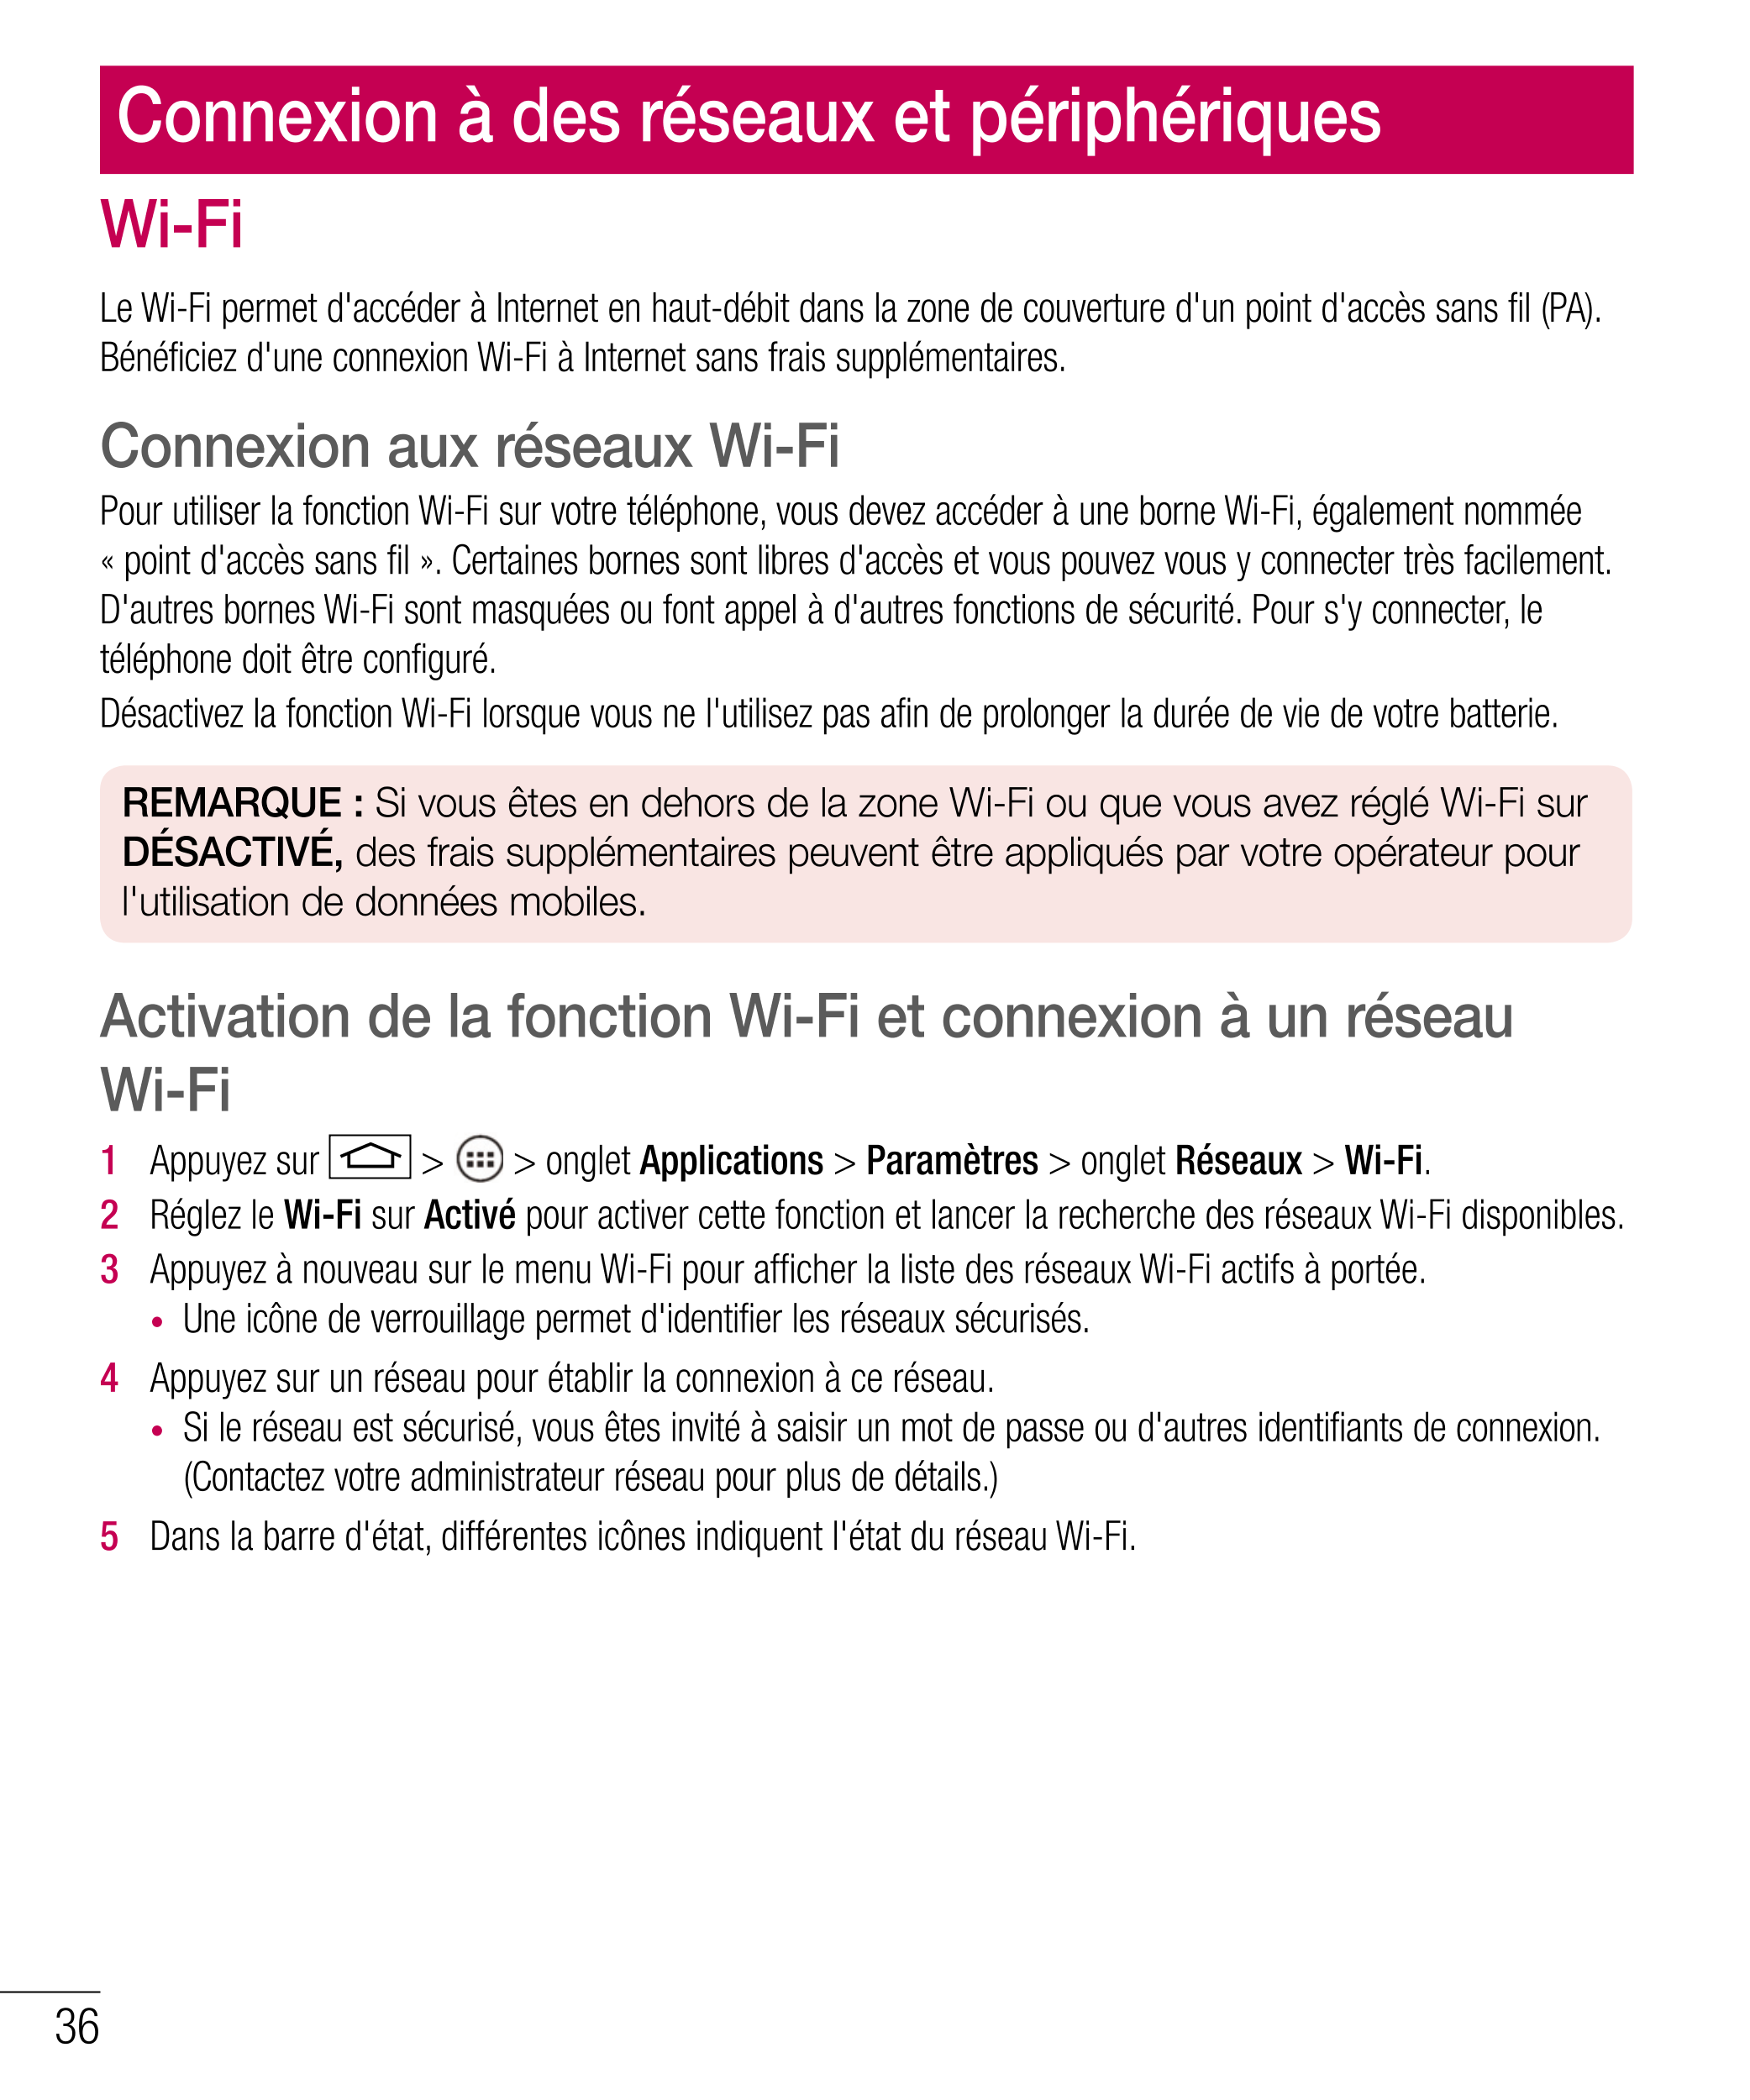 Connexion à des réseaux et périphériques
Wi-Fi
Le Wi-Fi permet d'accéder à Internet en haut-débit dans la zone de couverture d'u